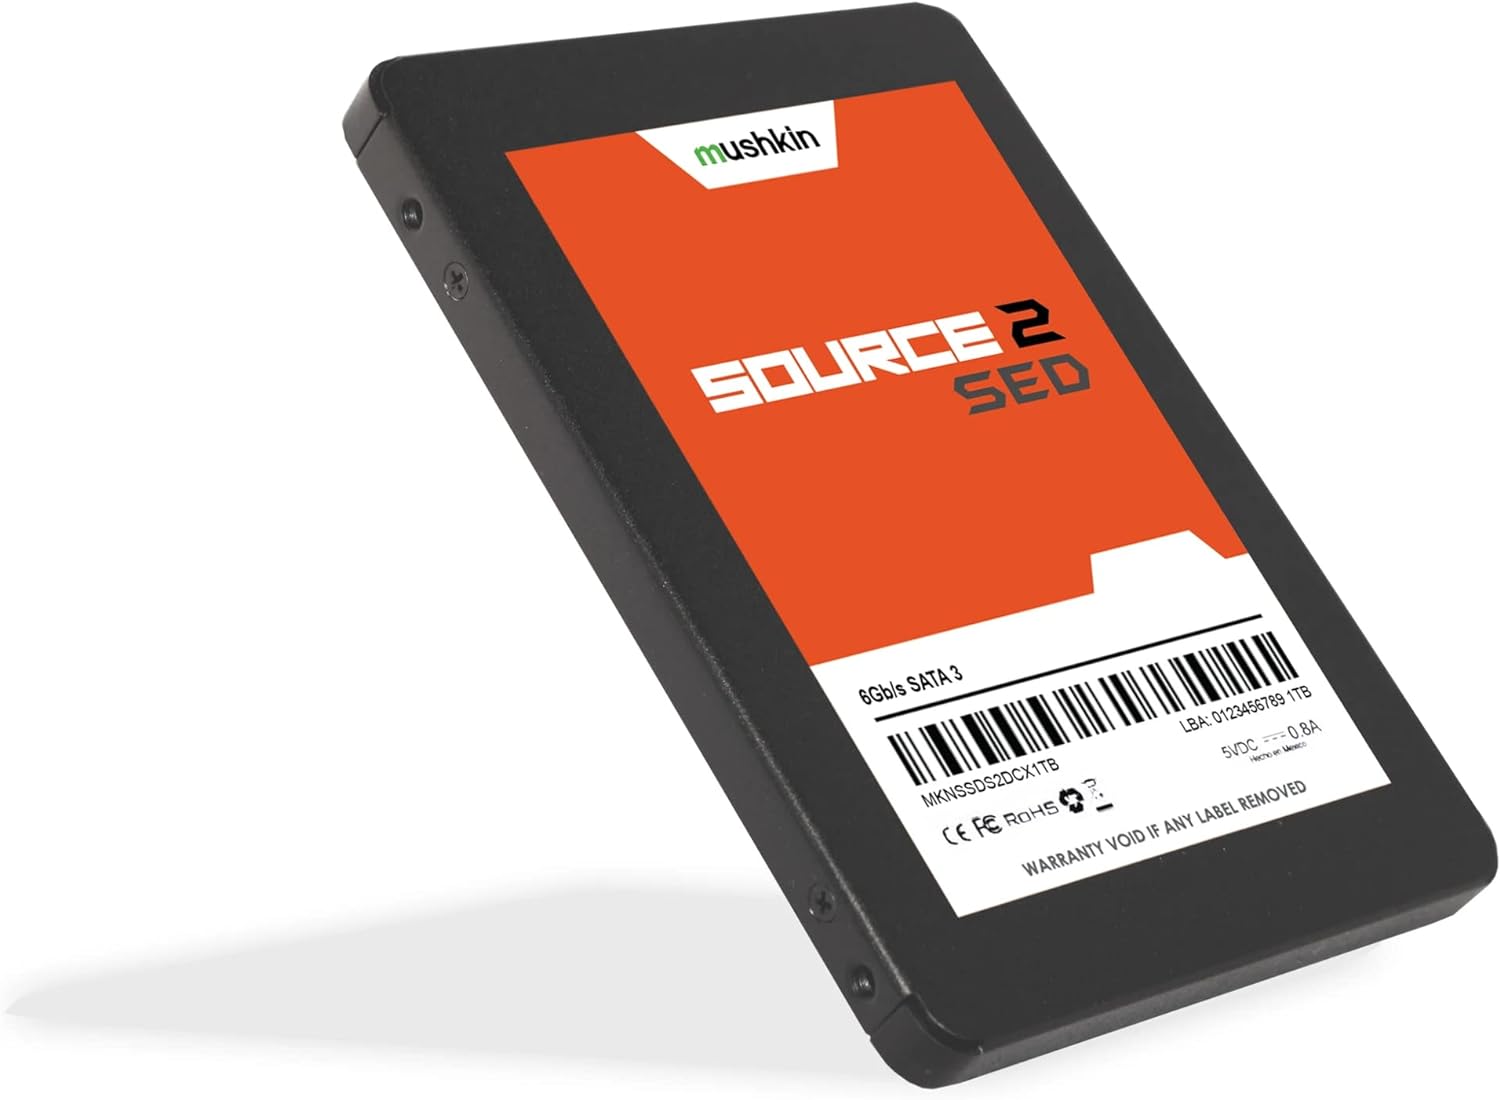 Mushkin Source 2 SED 2.5 SATA III 7mm SSD (MKNSSD) (1TB)